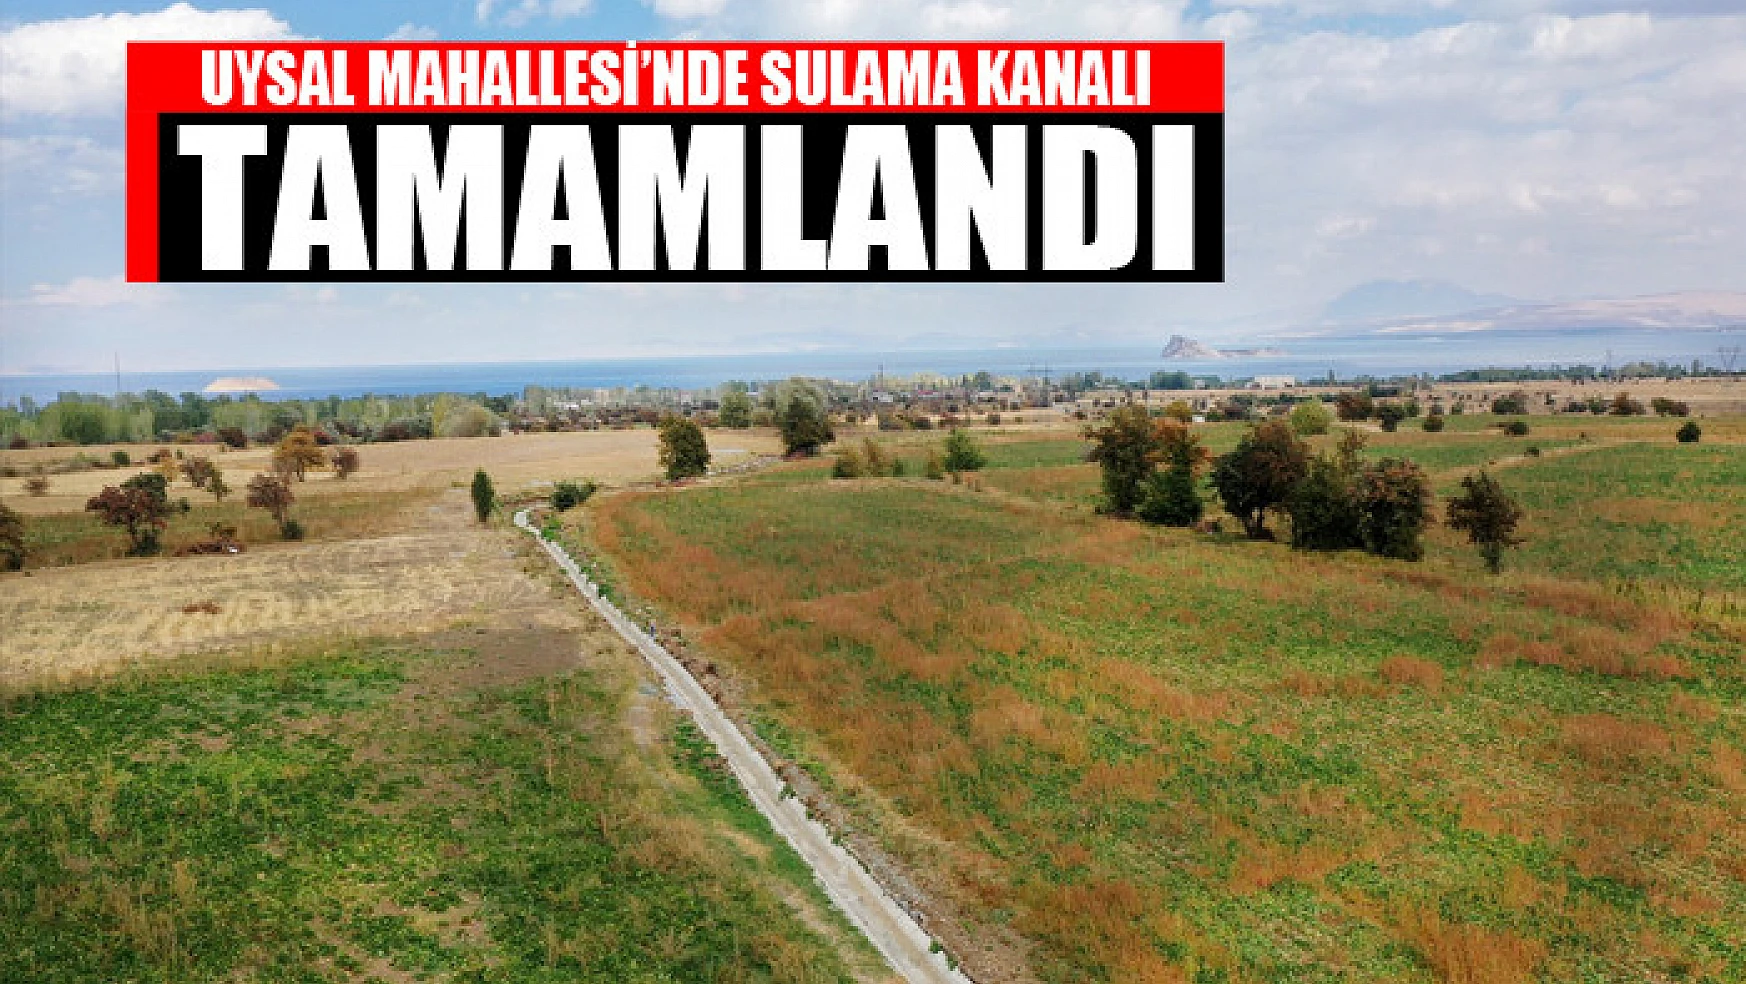 UYSAL MAHALLESİ'NDE SULAMA KANALI TAMAMLANDI